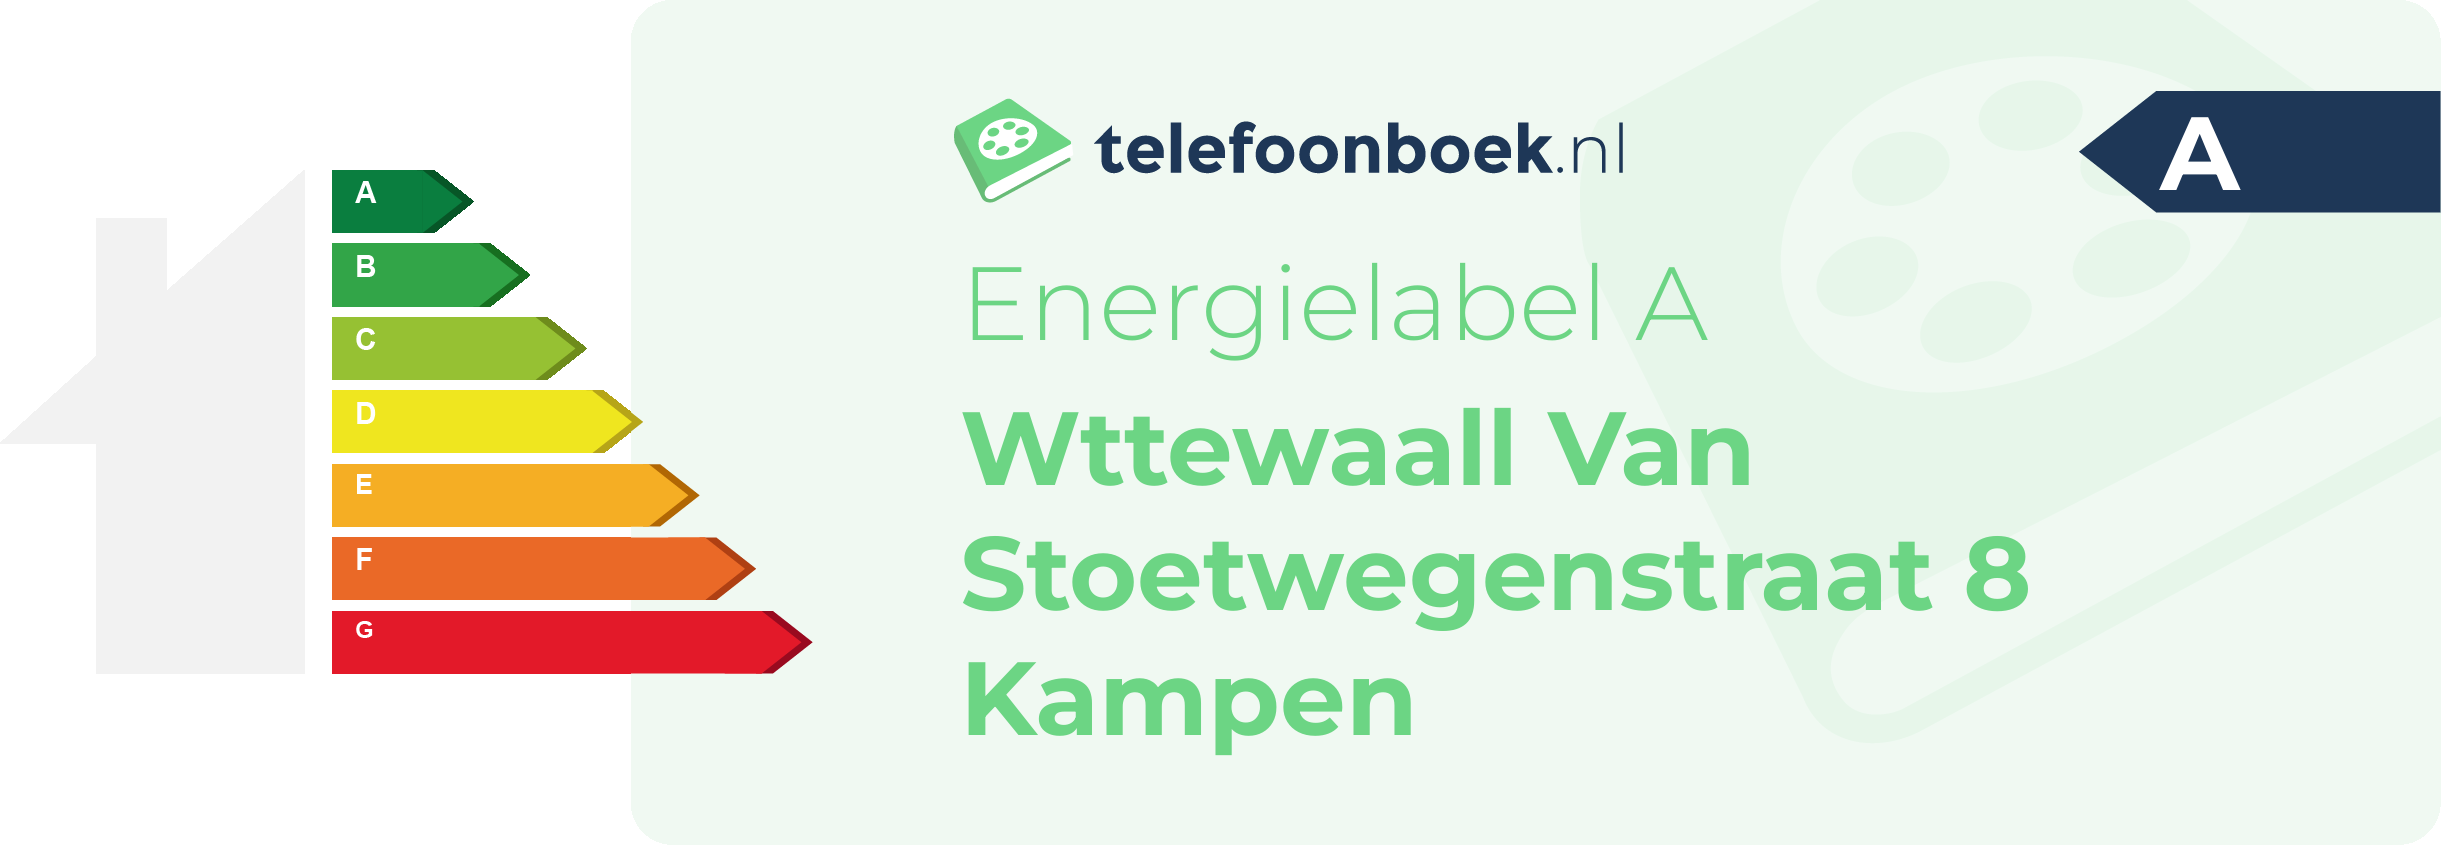 Energielabel Wttewaall Van Stoetwegenstraat 8 Kampen